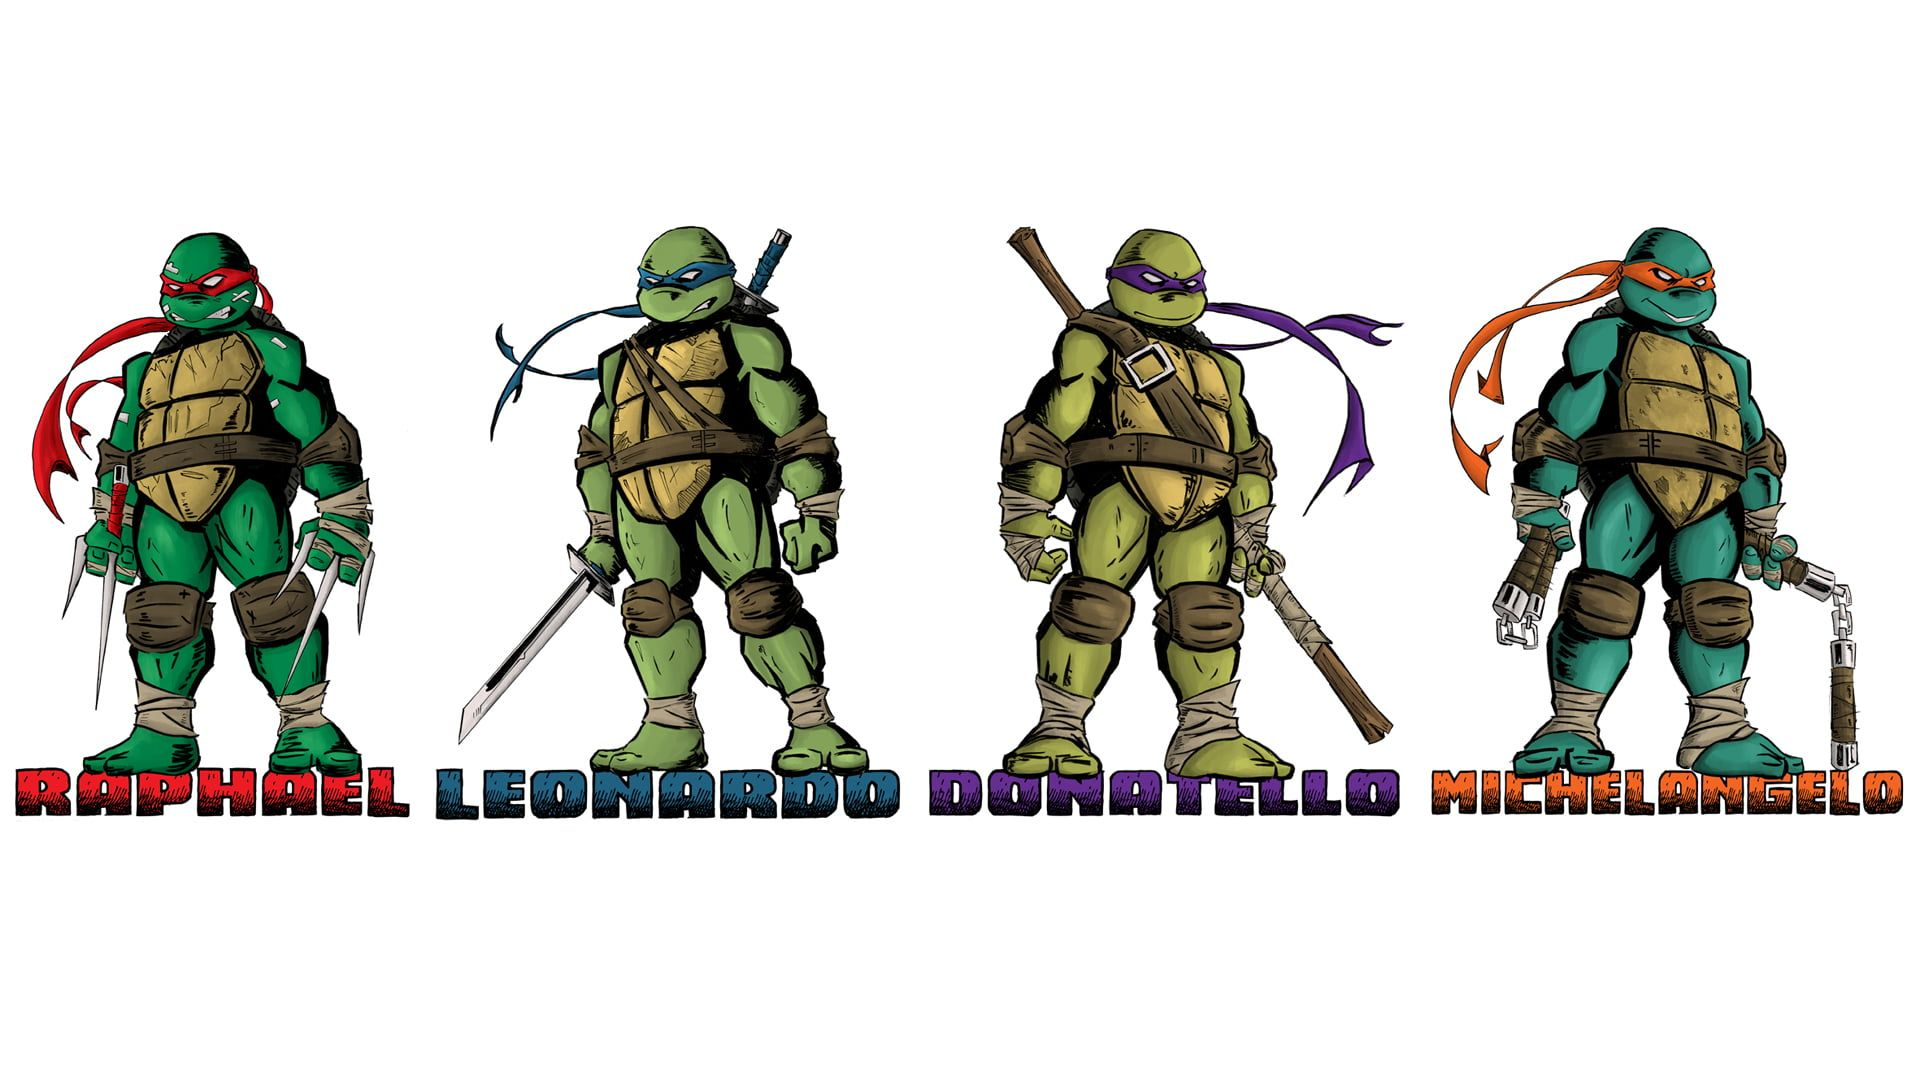 1920x1080 Teenage Mutant Ninja Turtles comic art #1080P #wallpaper #hdwallpaper #desktop | Teenage mutant ninja turtles, Ninja turtles, Ninja wallpaper